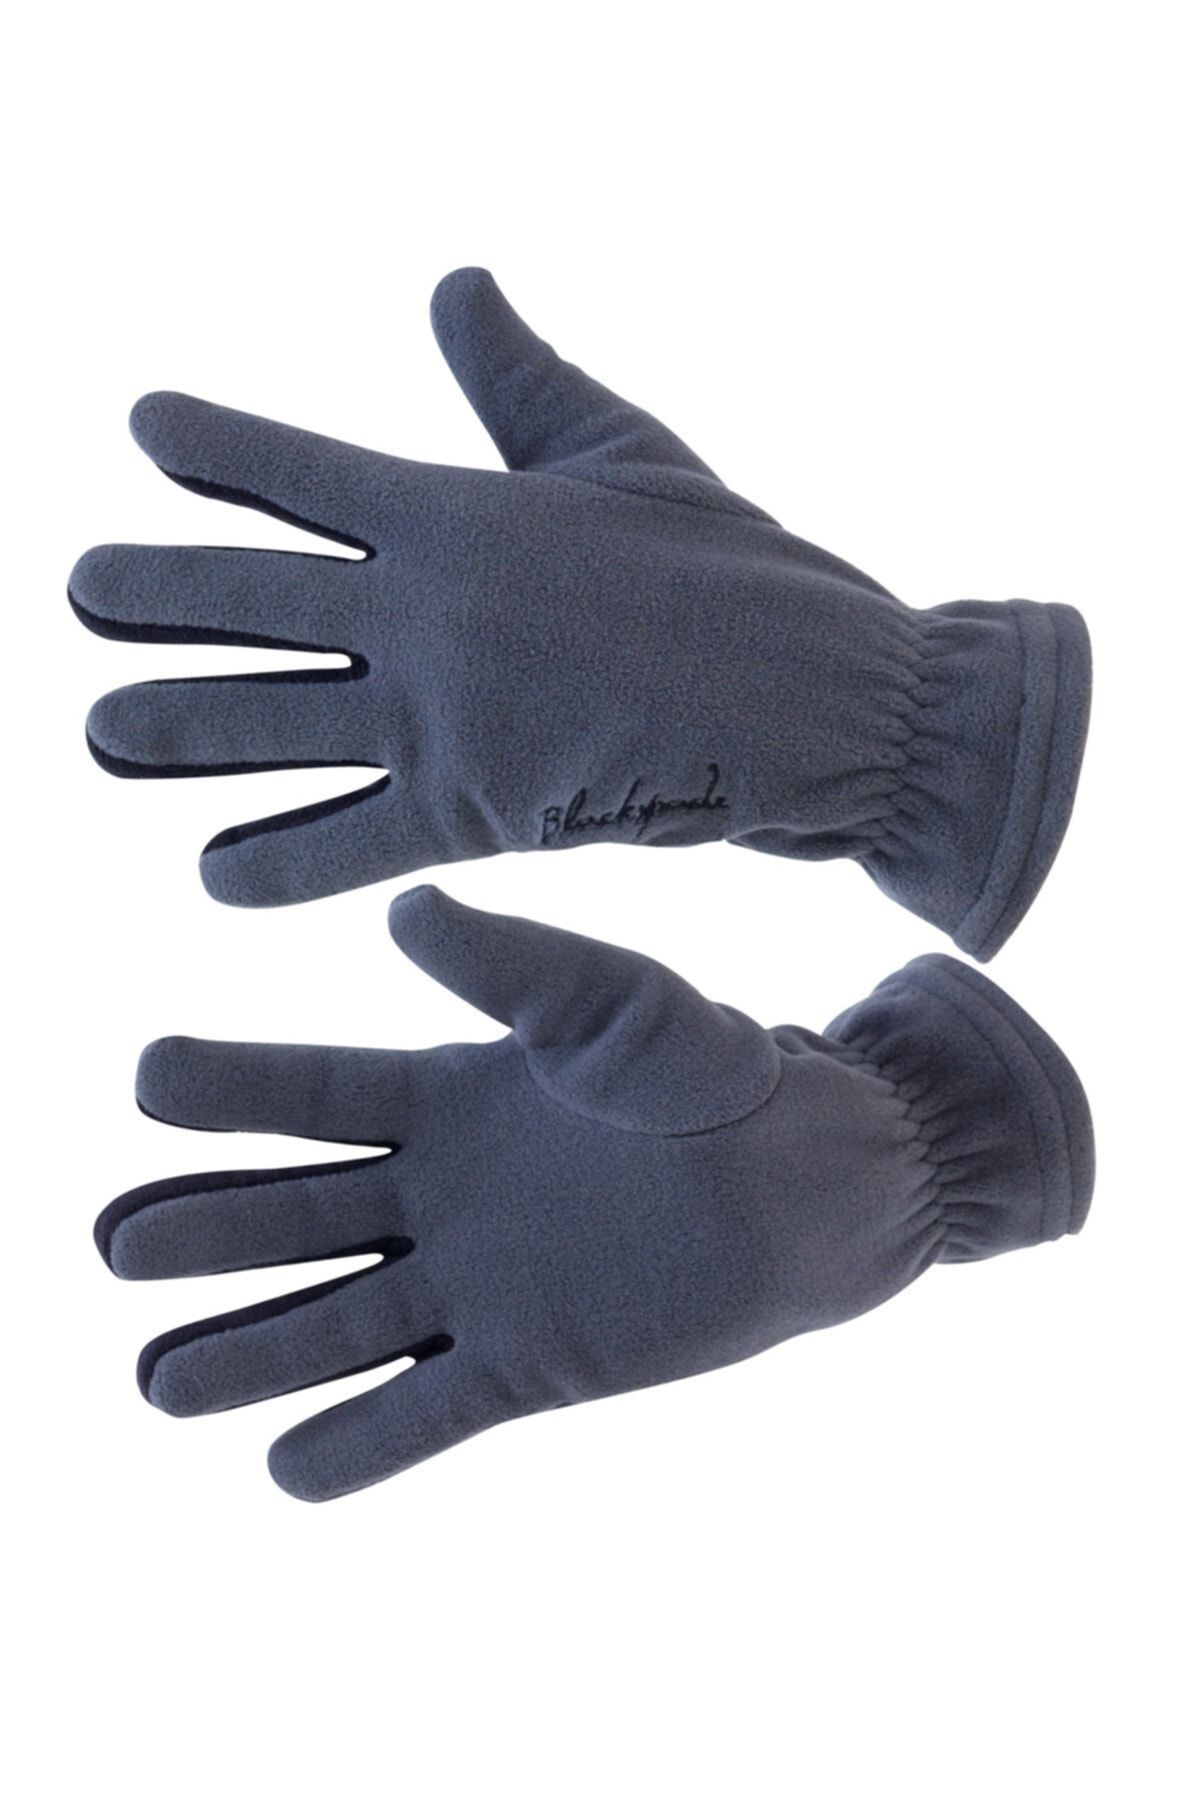 Blackspade Unisex Polar Fleece Gloves